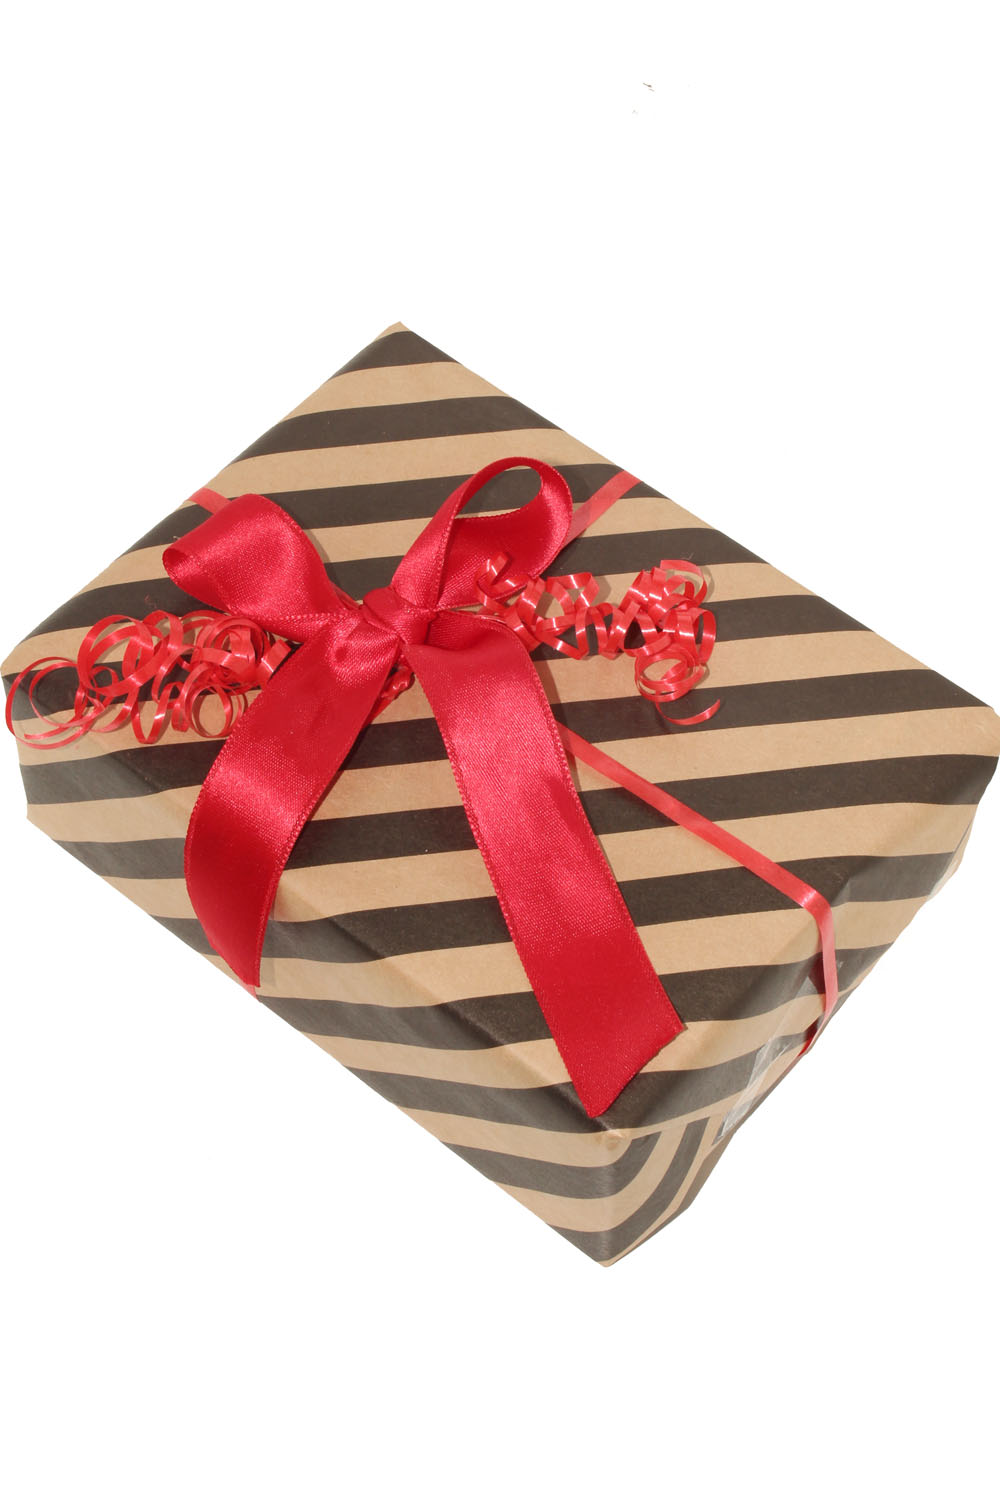 Geschenkverpackung! Wir verpacken deinen Artikel für dich als Geschenk